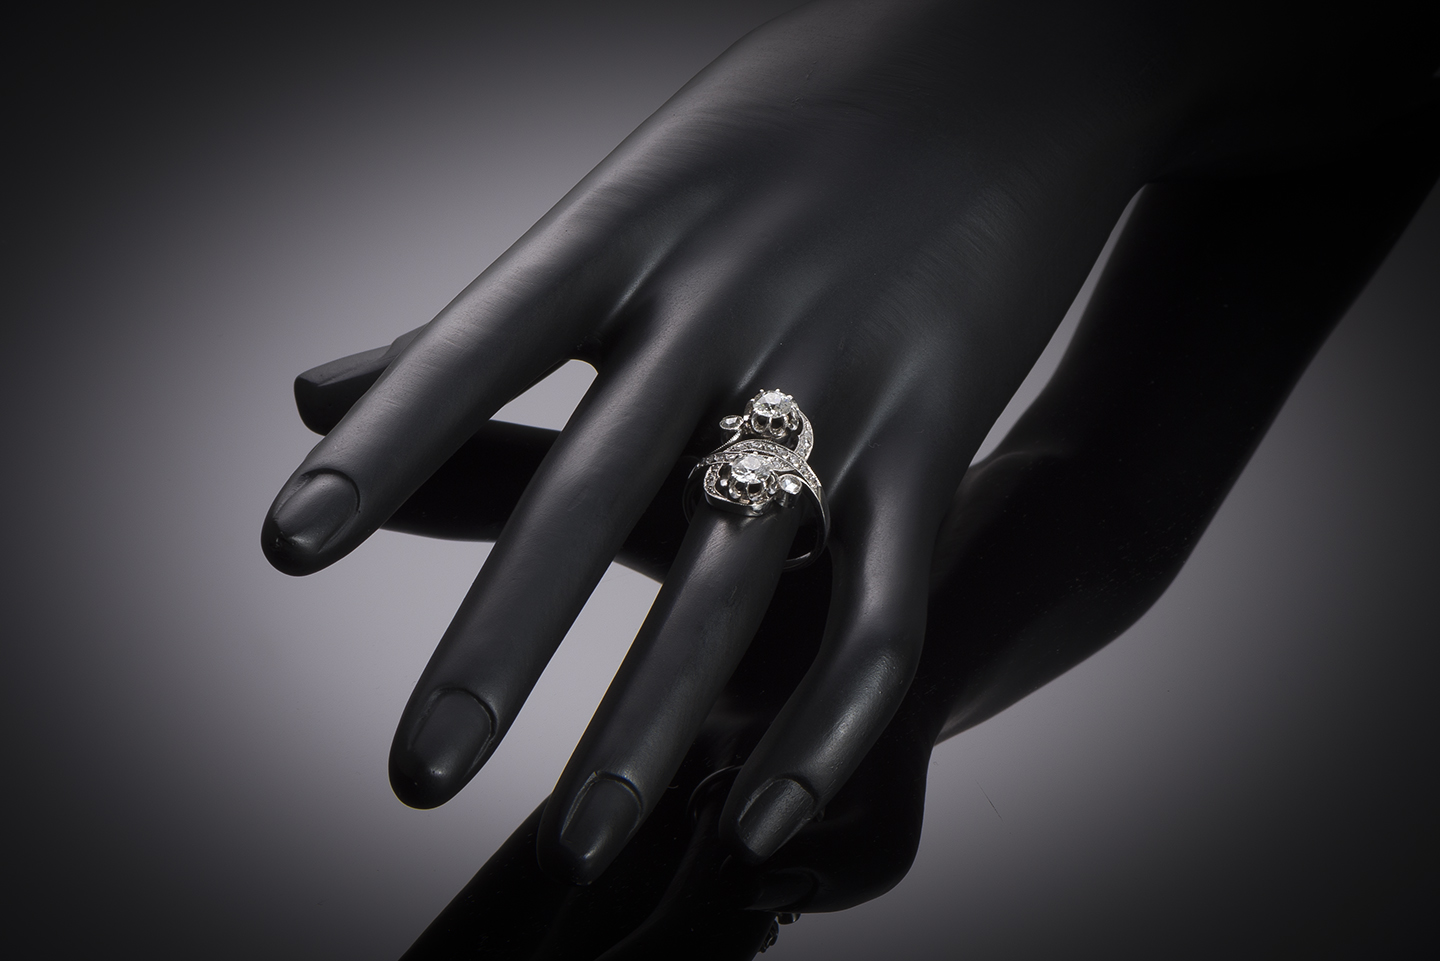 Belle Epoque diamonds (0.70 carat x 2) ring in platinum-3